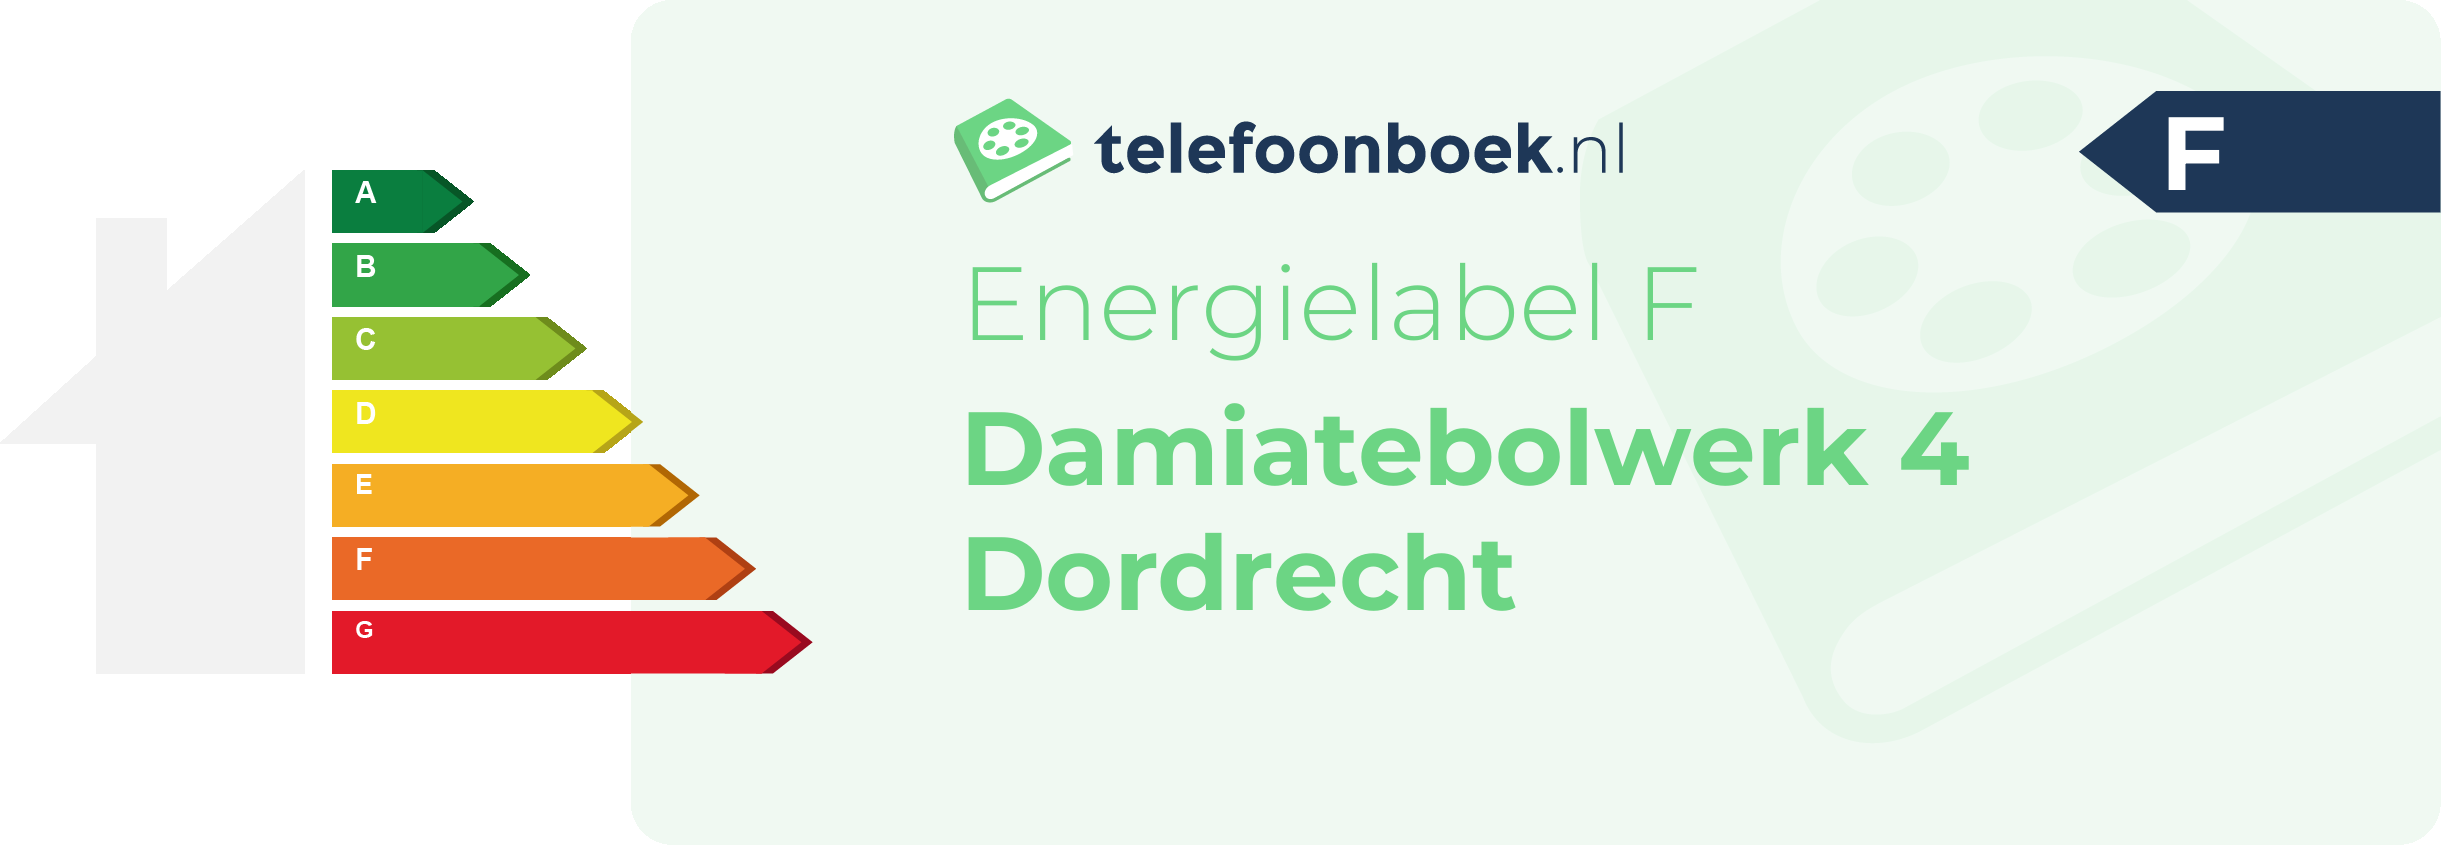 Energielabel Damiatebolwerk 4 Dordrecht